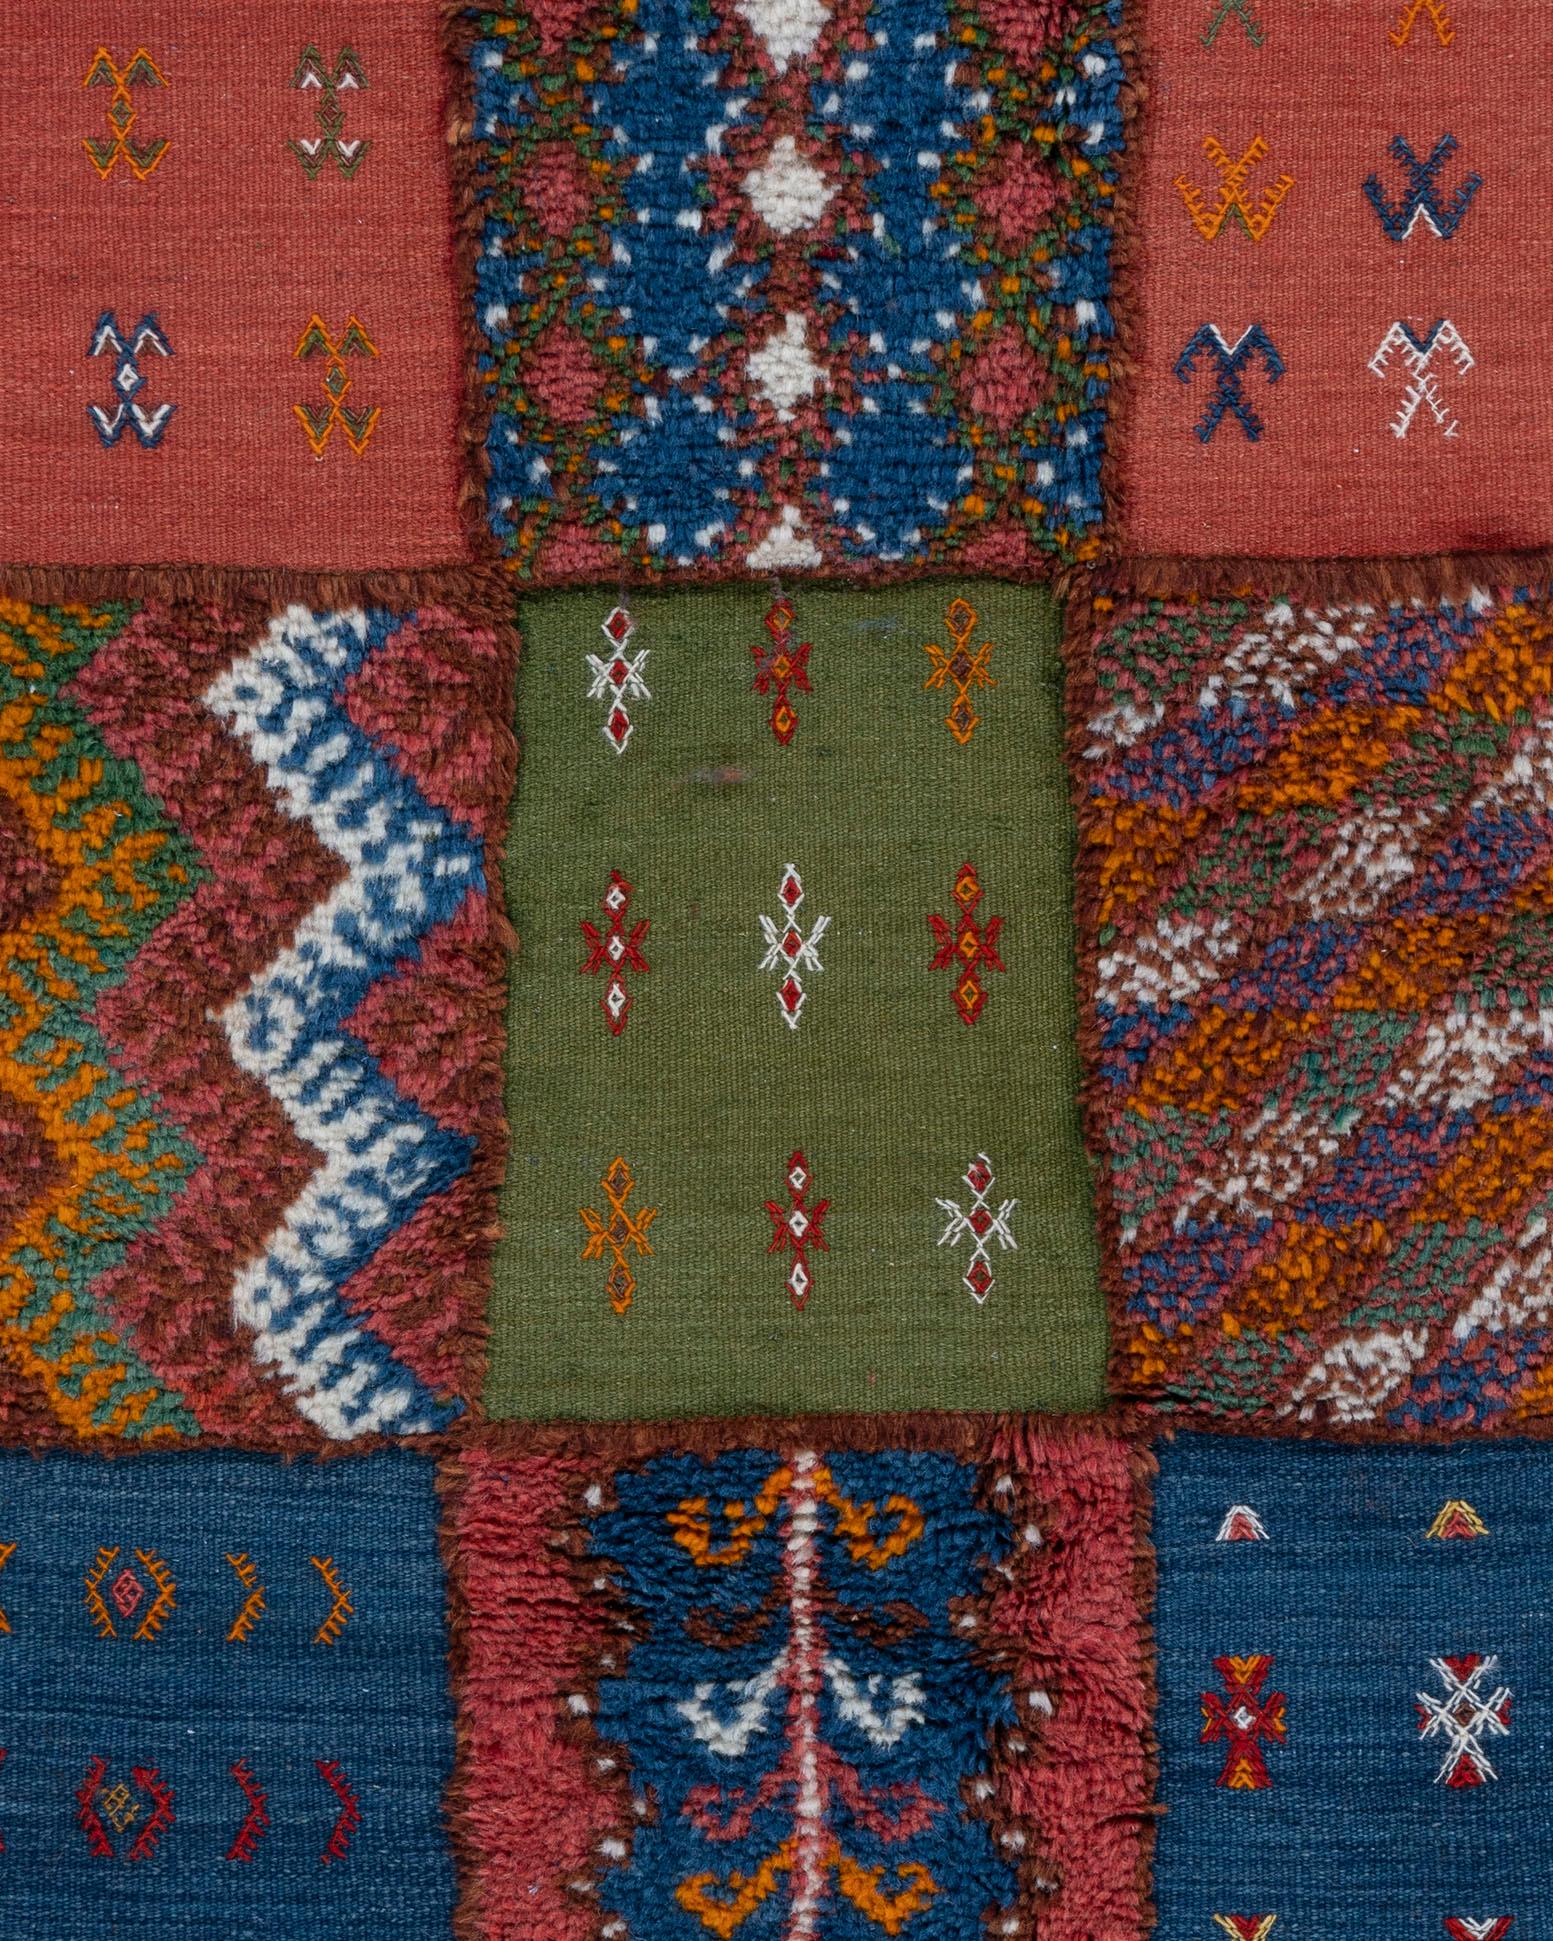 Marokkanischer Vintage-Teppich im Vintage-Stil mit Flickenteppichmuster 2,44 m x 3,66 m. Exotische, schicke und wunderbar vielseitige marokkanische Teppiche erfreuen sich nach wie vor großer Beliebtheit und verzaubern Designliebte mit ihren Mustern